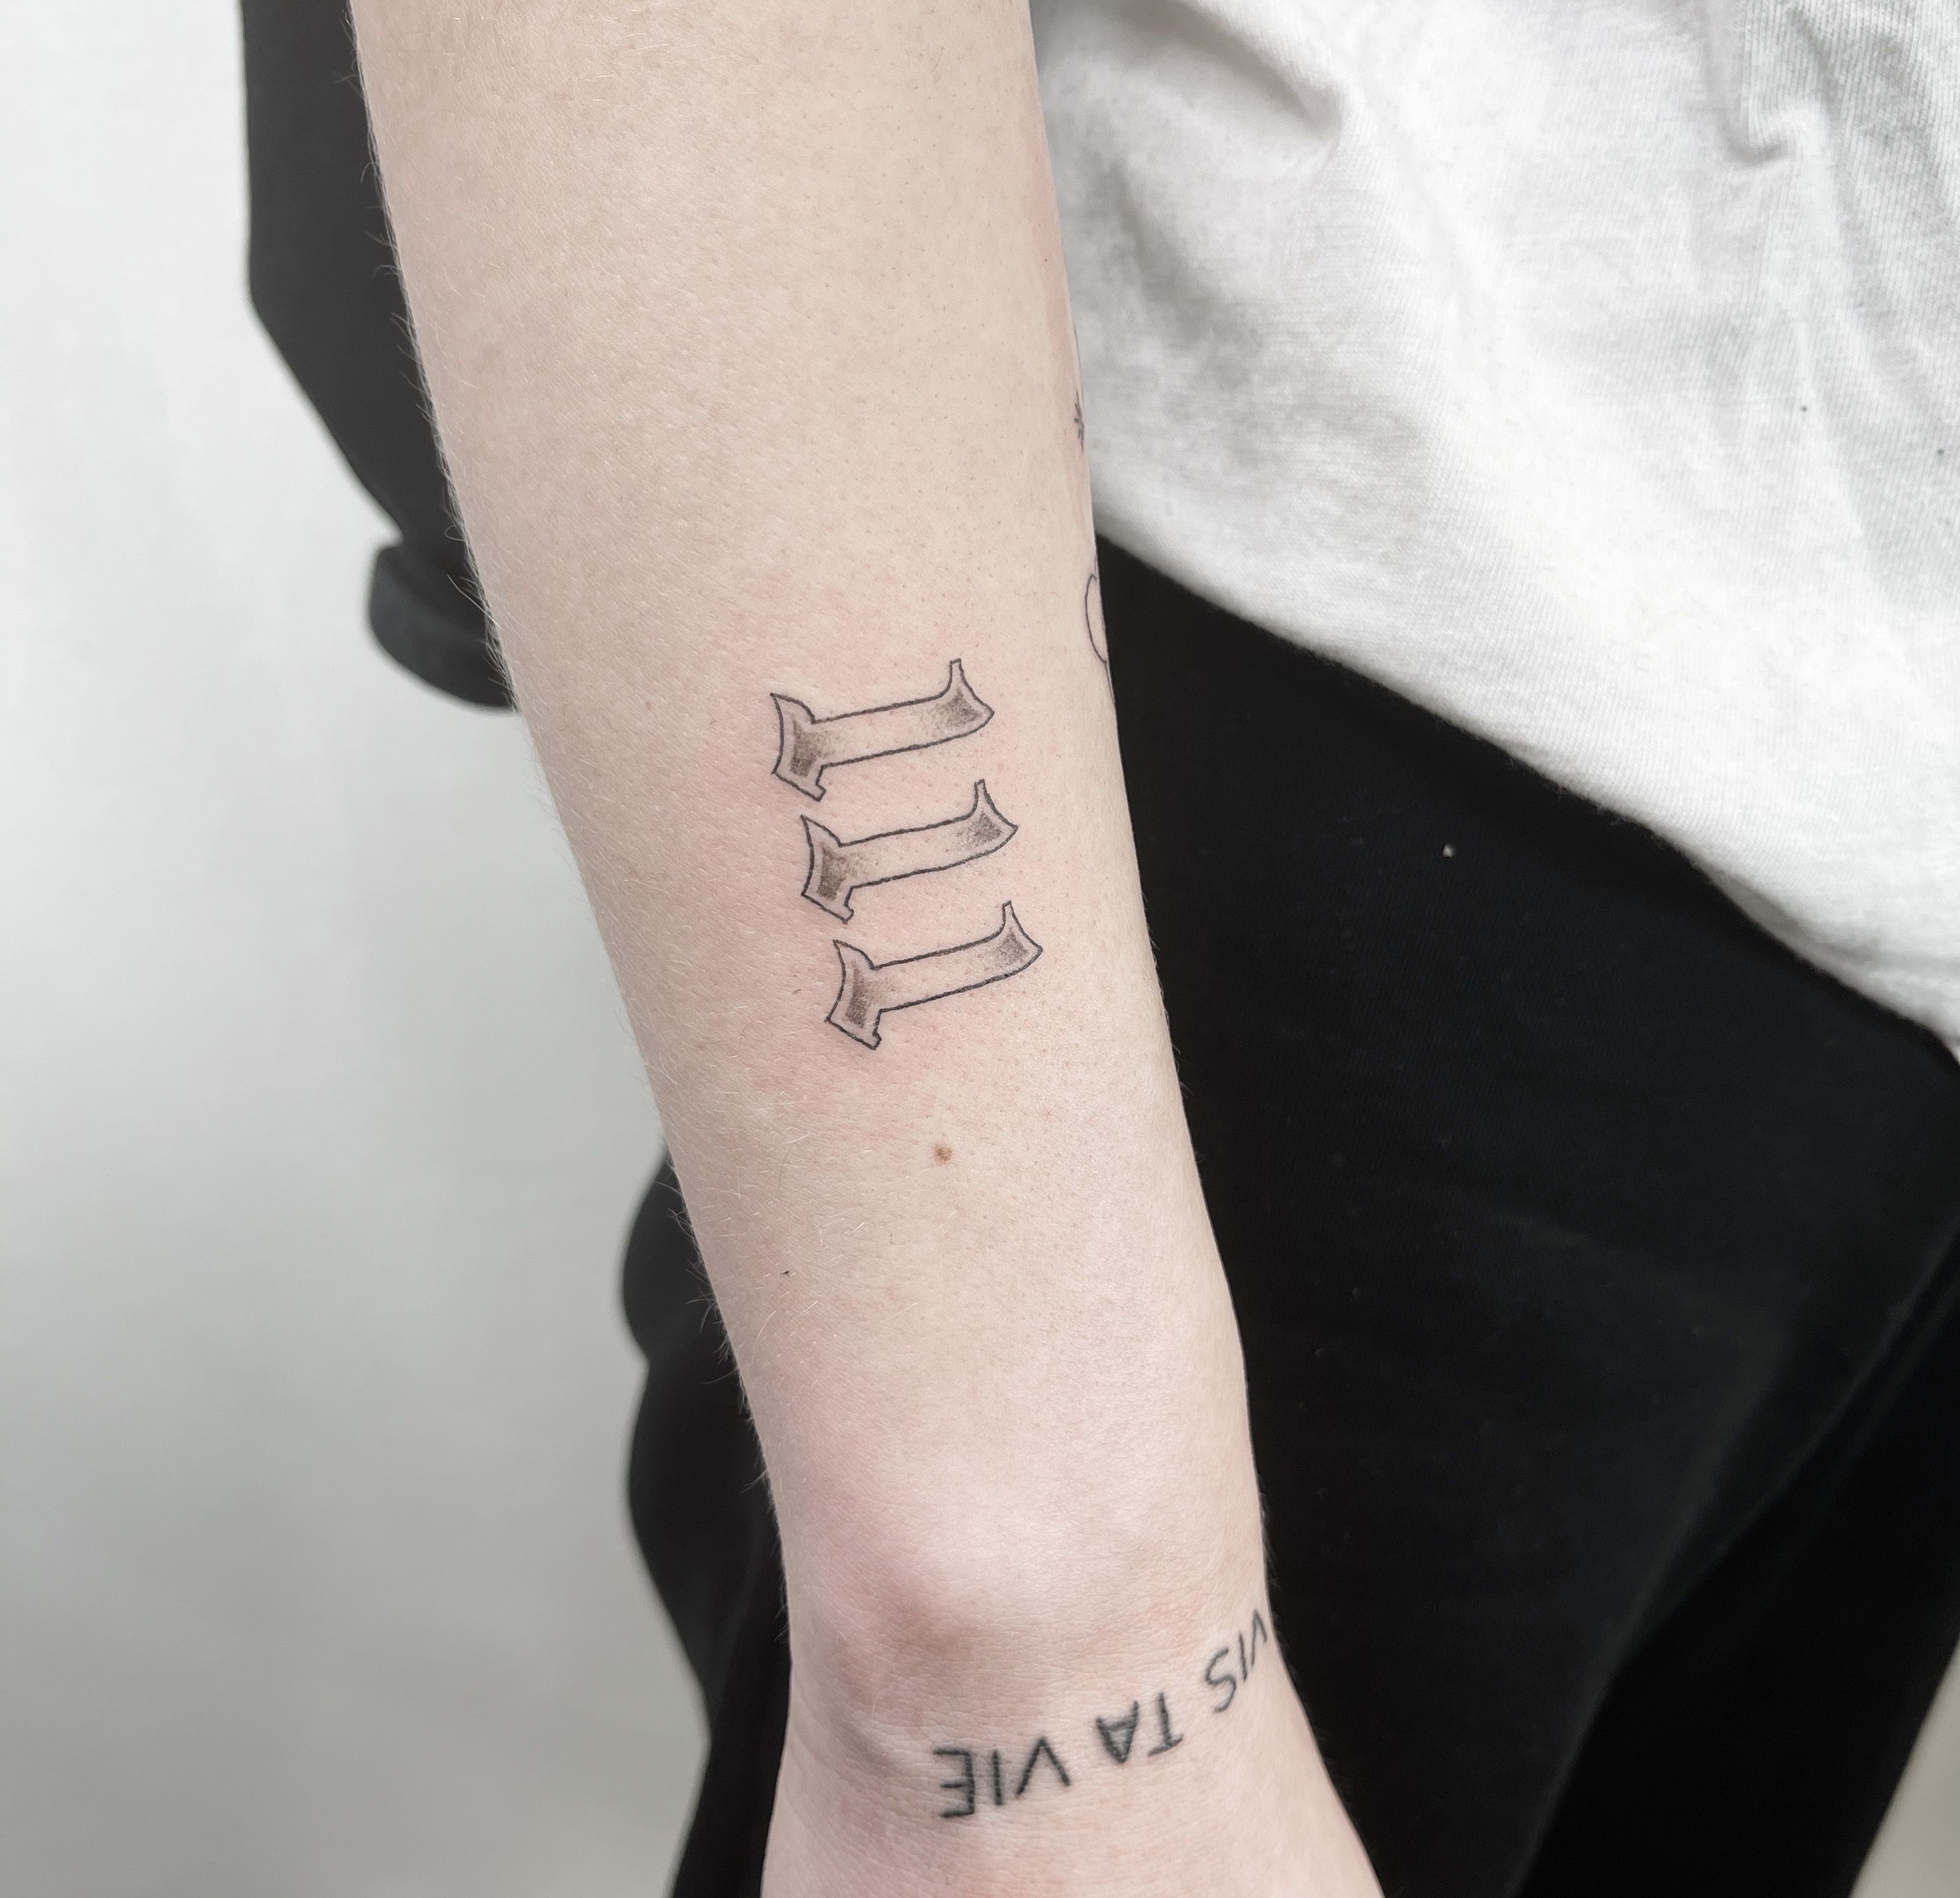 Number 1111 tattooed on the wrist